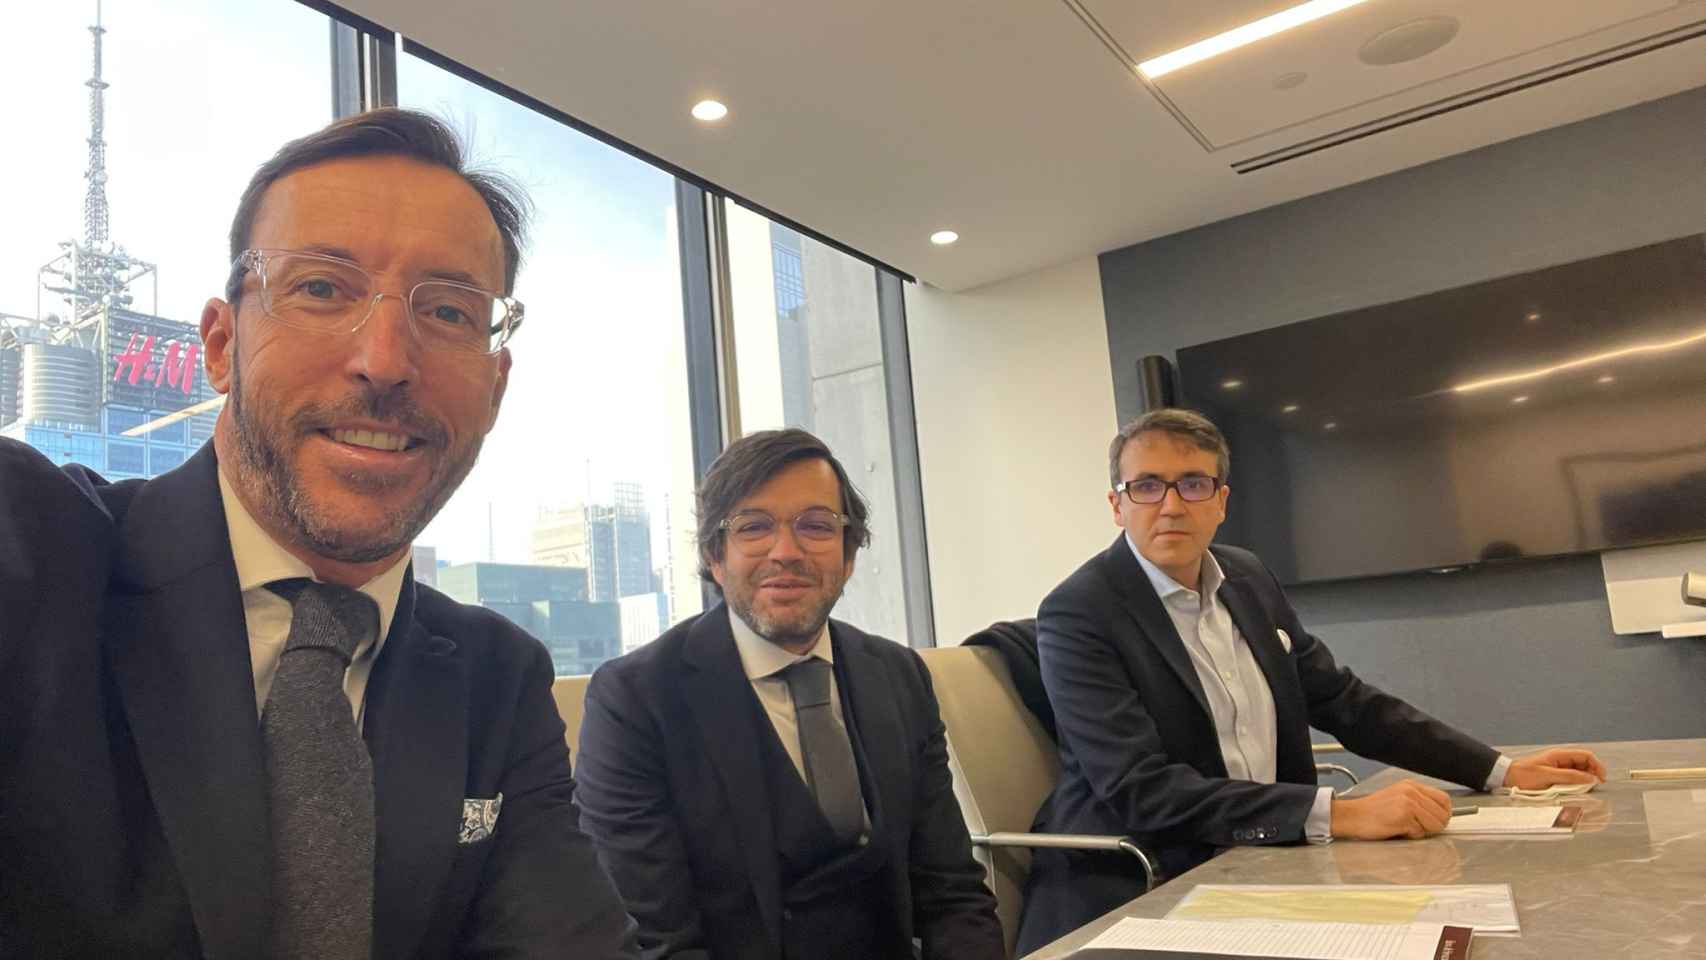 Armando Betancor, en el centro, con los socios del despacho Kepler Karst, Luis Barber y Rodrigo Olivares Caminal, en unas oficinas en Nueva York.